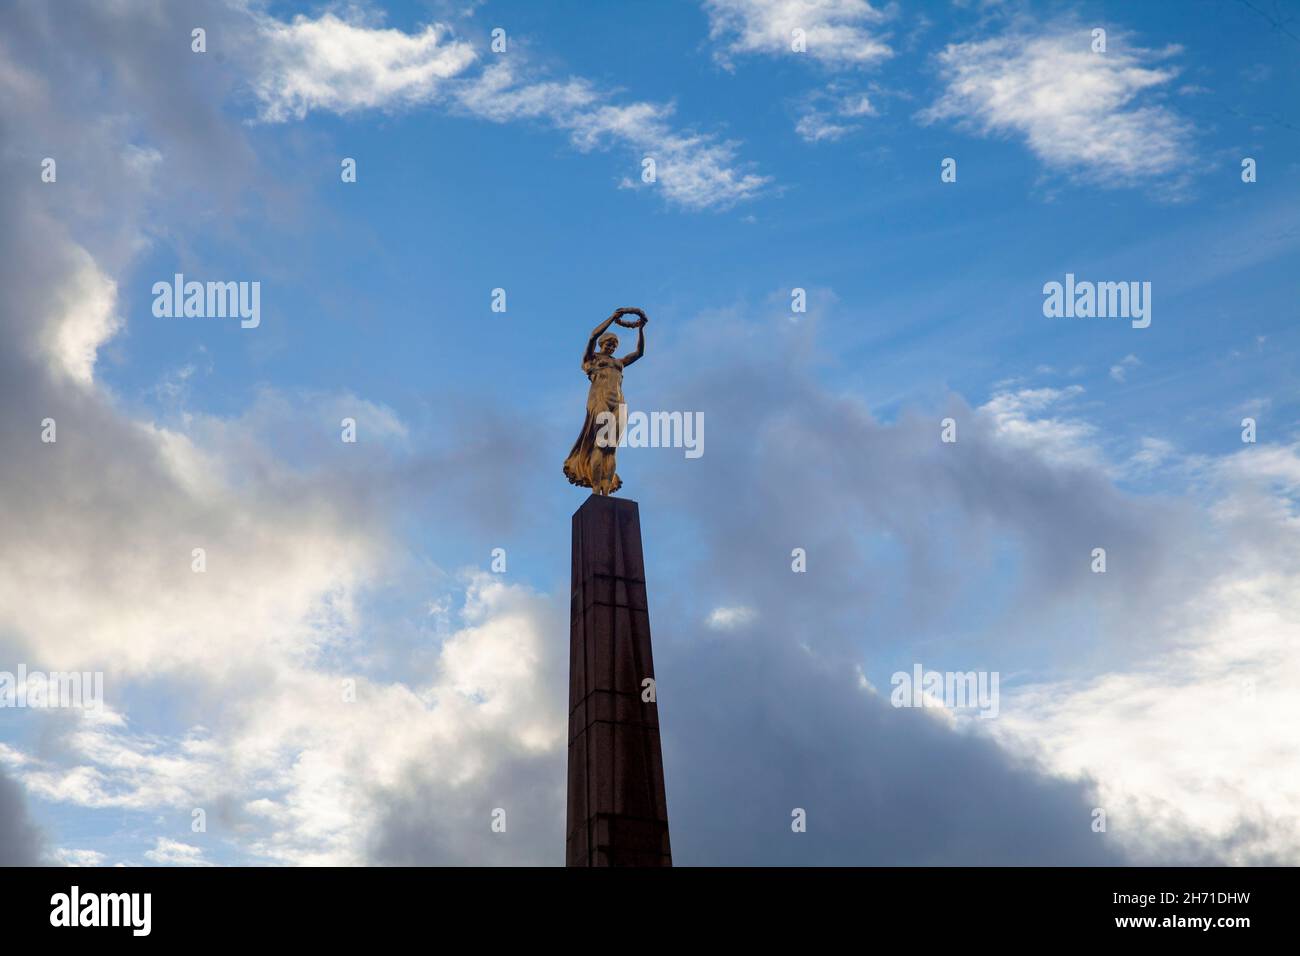 Monumento de recuerdo cerca de la Plaza de la Constitución. Es un obelisco granítico y un monumento conmemorativo de la guerra apodado "Dama de Oro" por su estatua dorada. Luxemburgo. Foto de stock